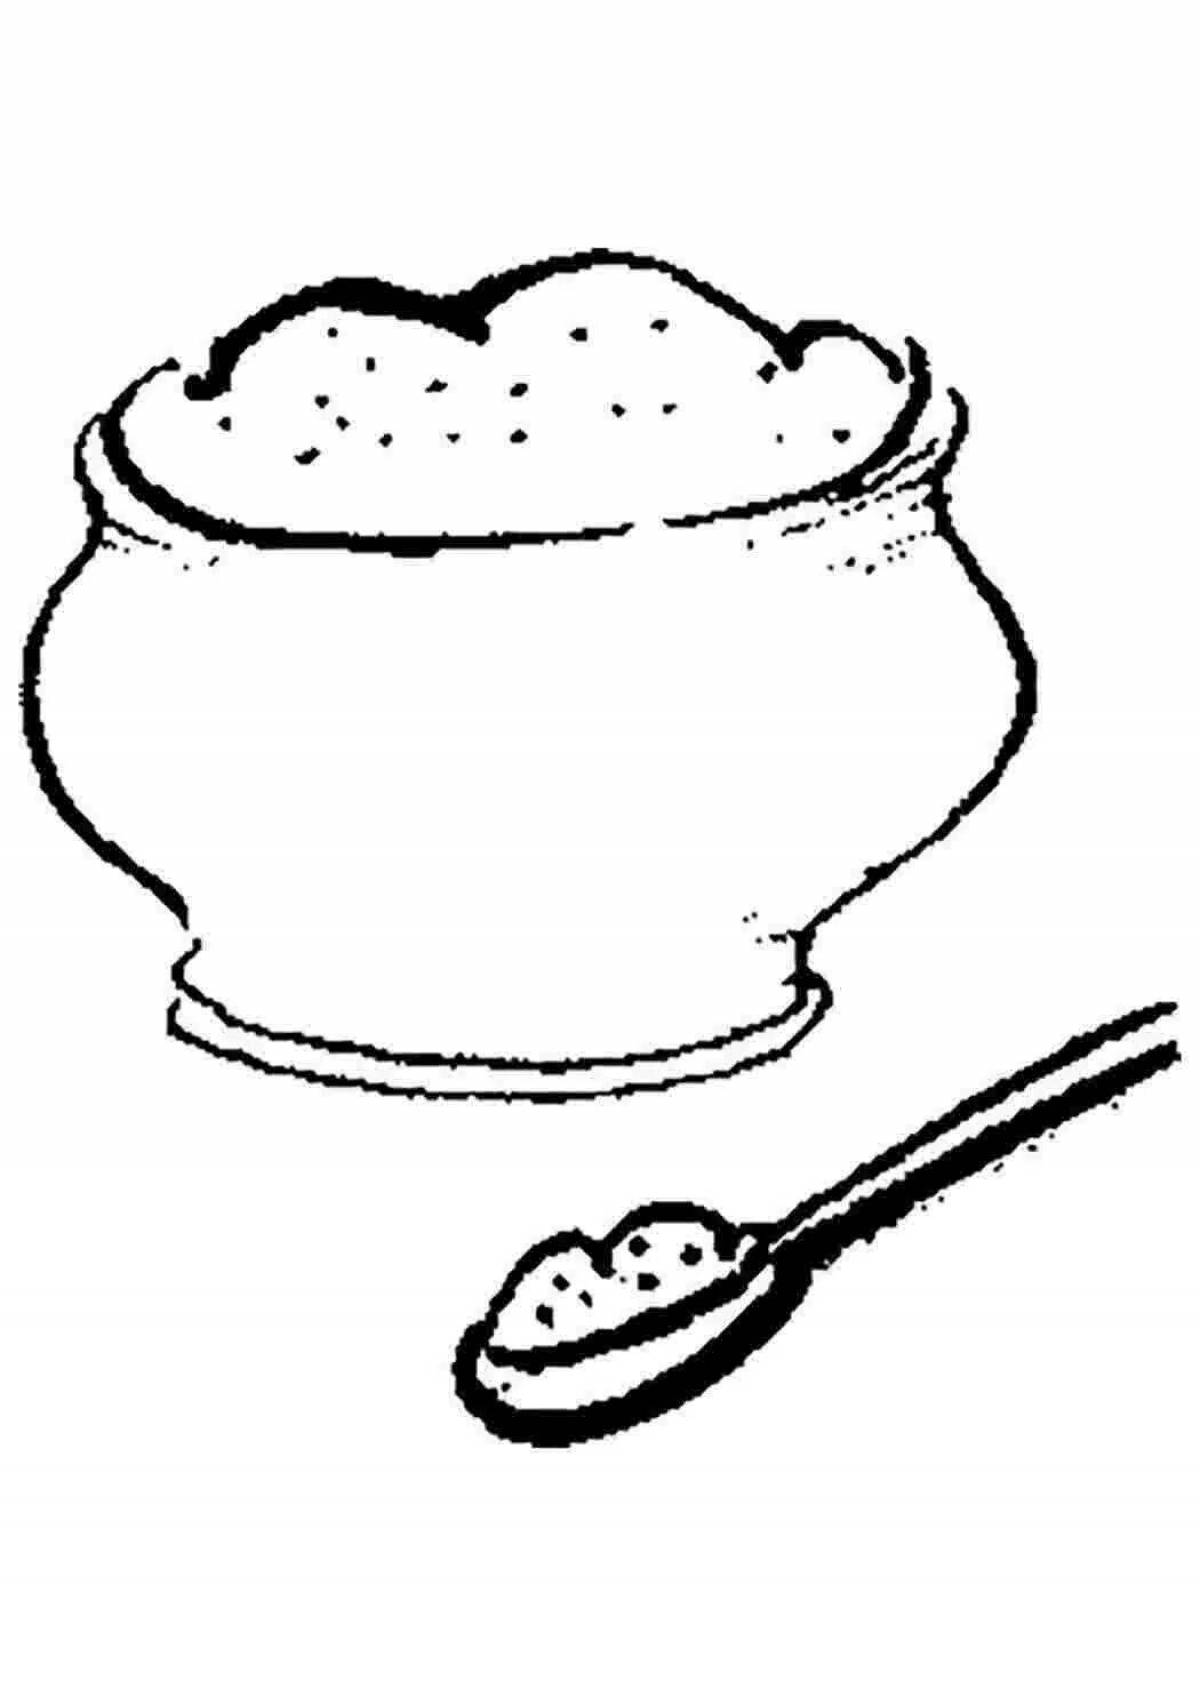 A decadent pot of porridge